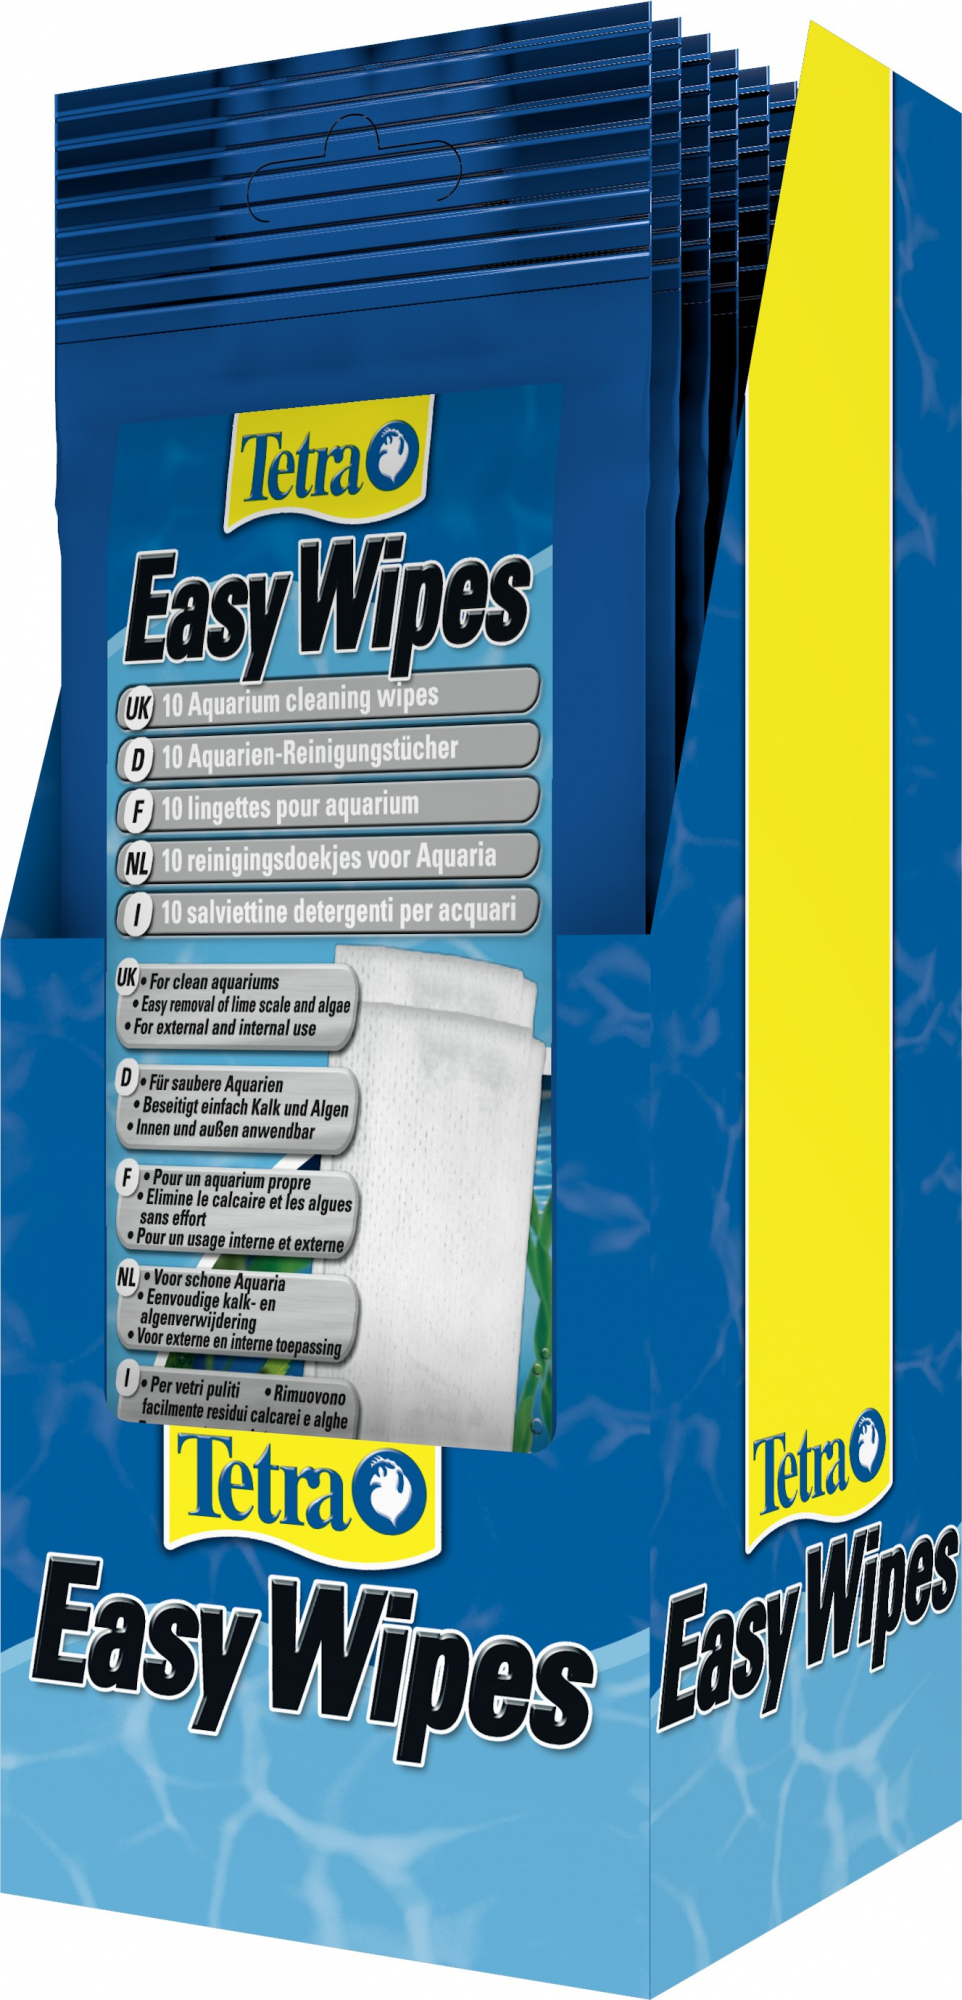 Tetra Easywipes 10 salviette detergenti per acquario